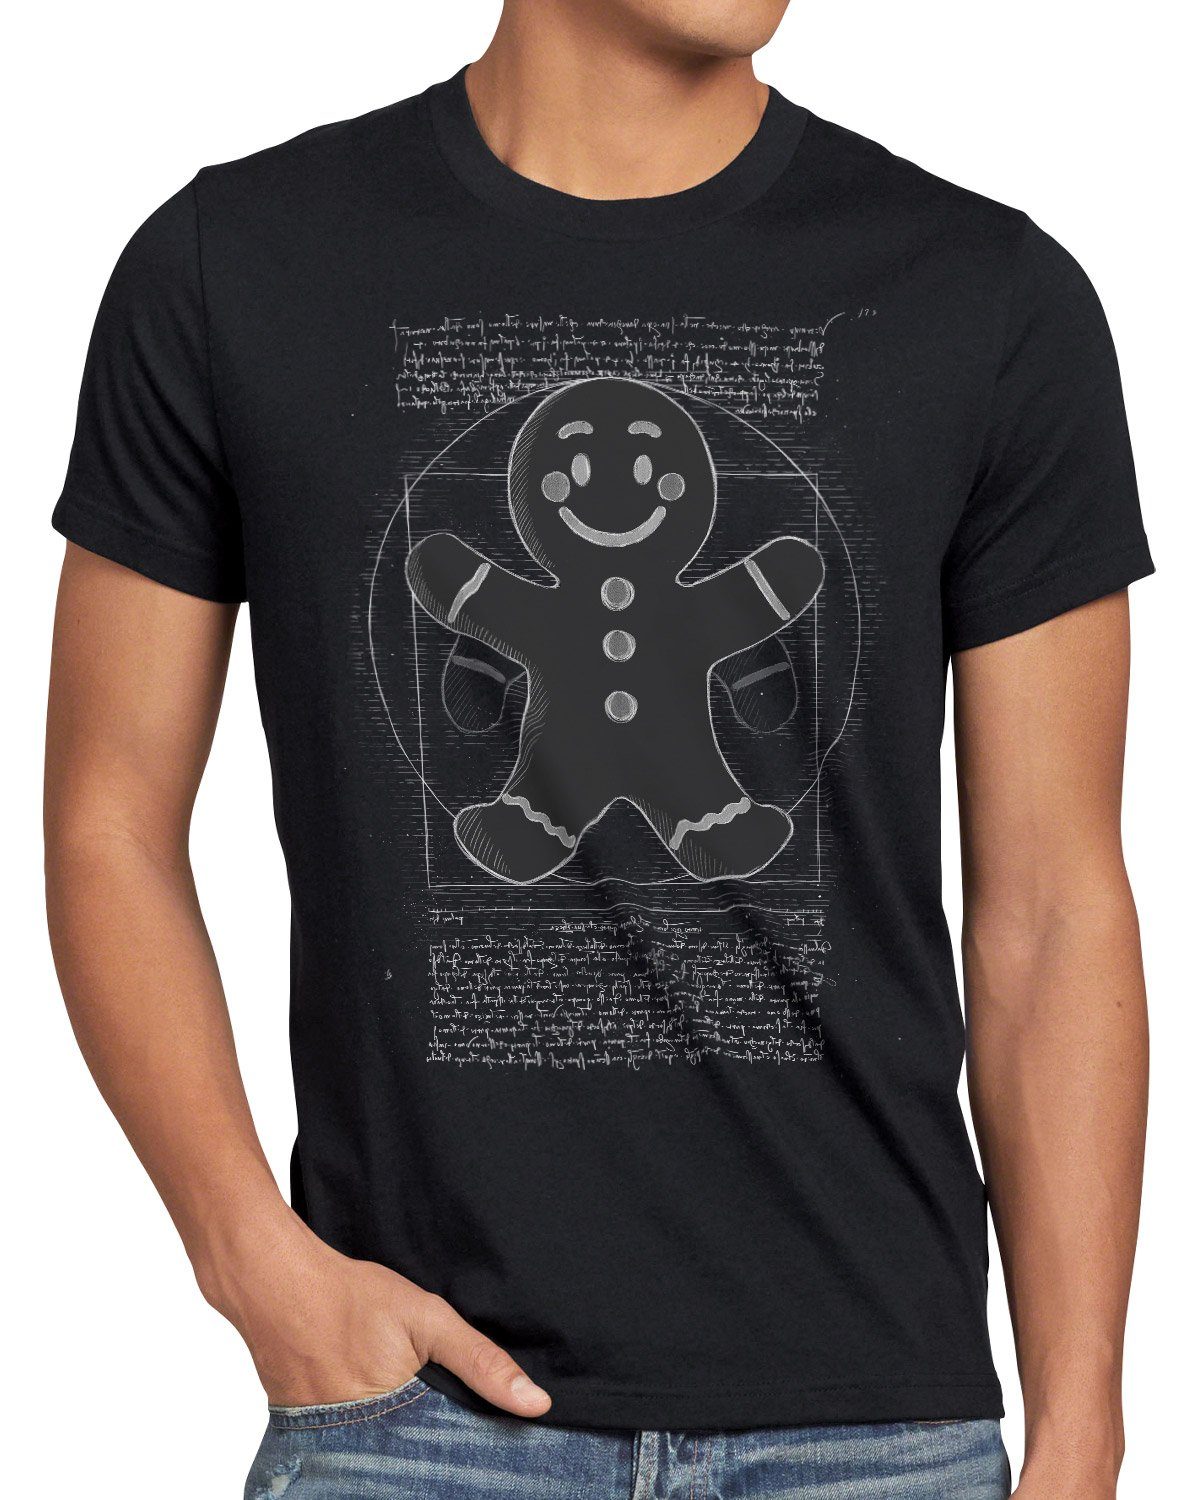 Herren T-Shirt Print-Shirt Lebkuchenmann weihnachtsmarkt pfefferkuchen style3 schwarz Vitruvianischer